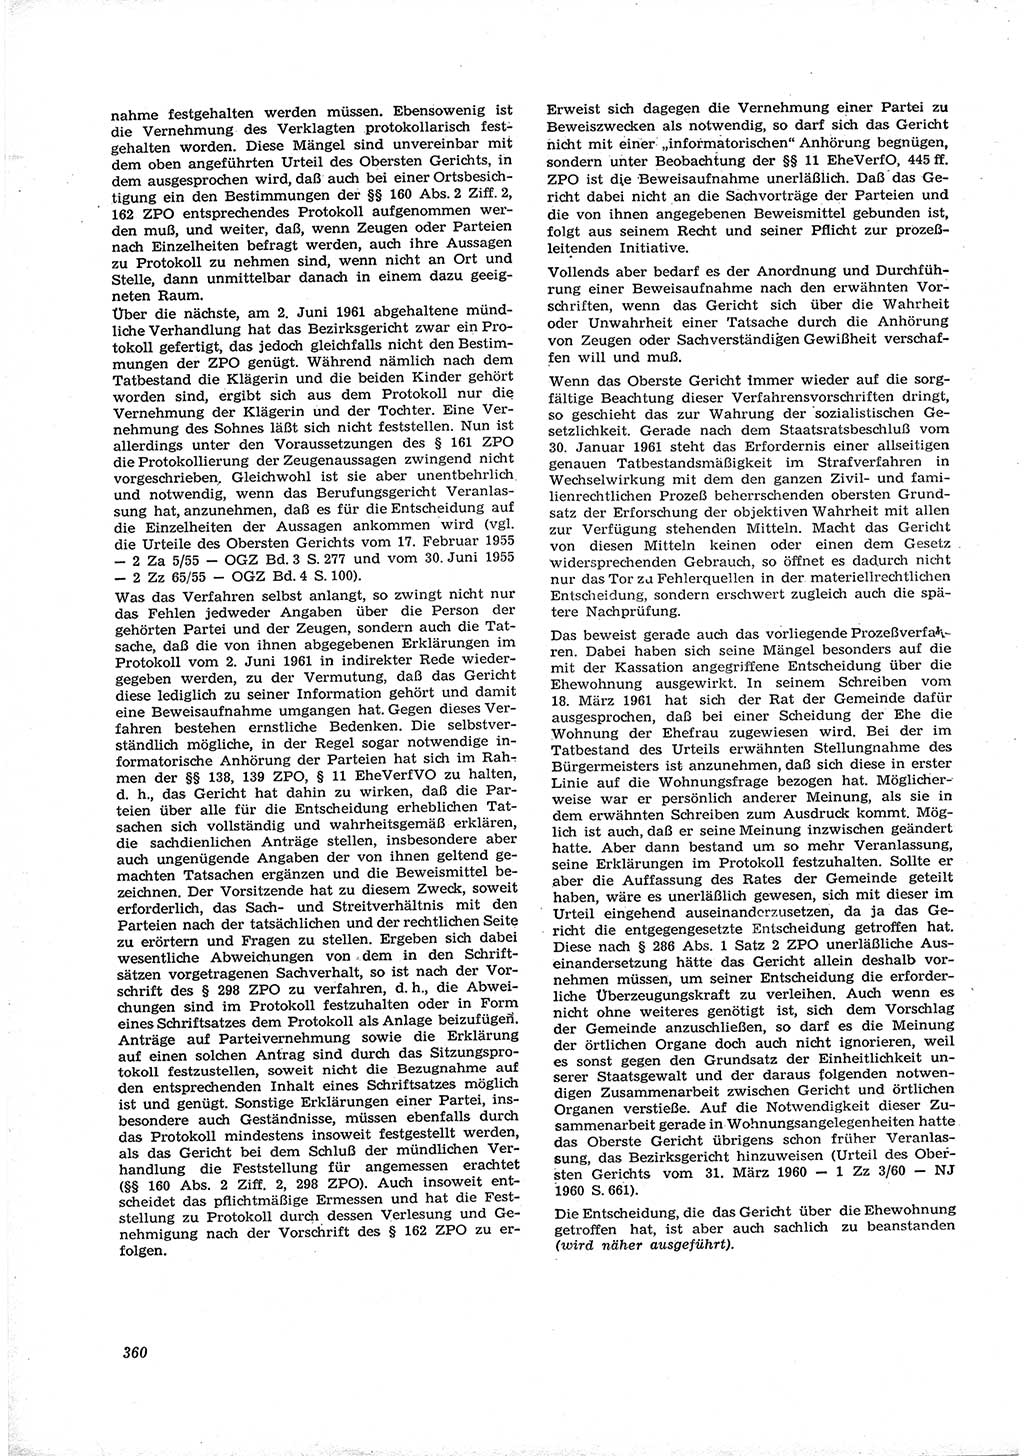 Neue Justiz (NJ), Zeitschrift für Recht und Rechtswissenschaft [Deutsche Demokratische Republik (DDR)], 16. Jahrgang 1962, Seite 360 (NJ DDR 1962, S. 360)